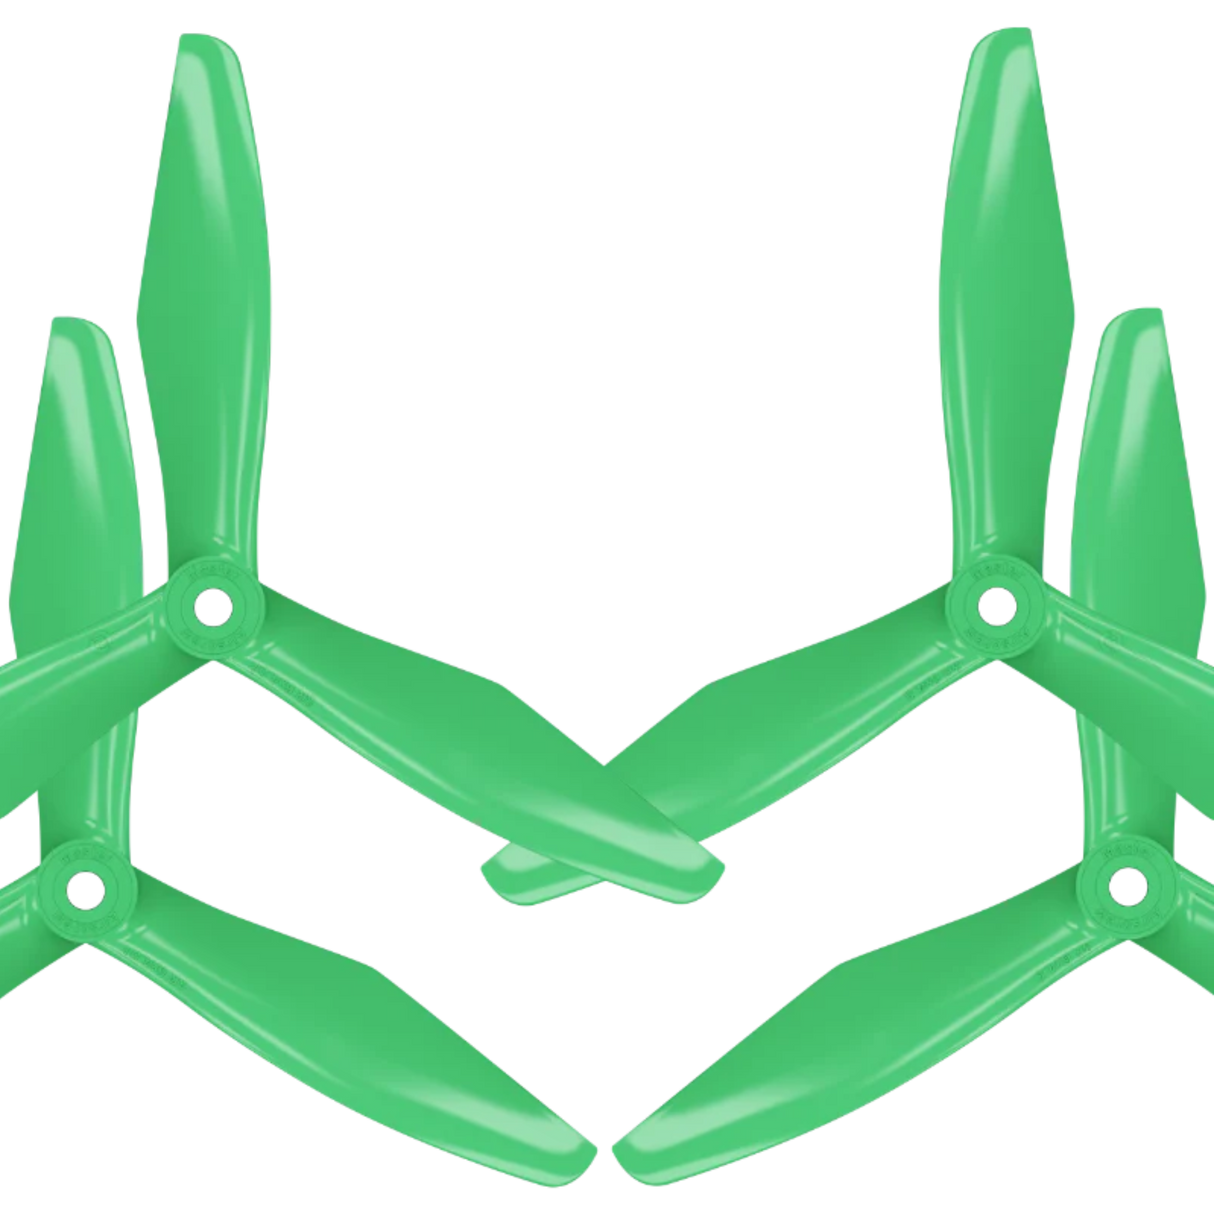 Master Aircrews  5x4.5-3 Prop Set (Green) - DroneDynamics.ca